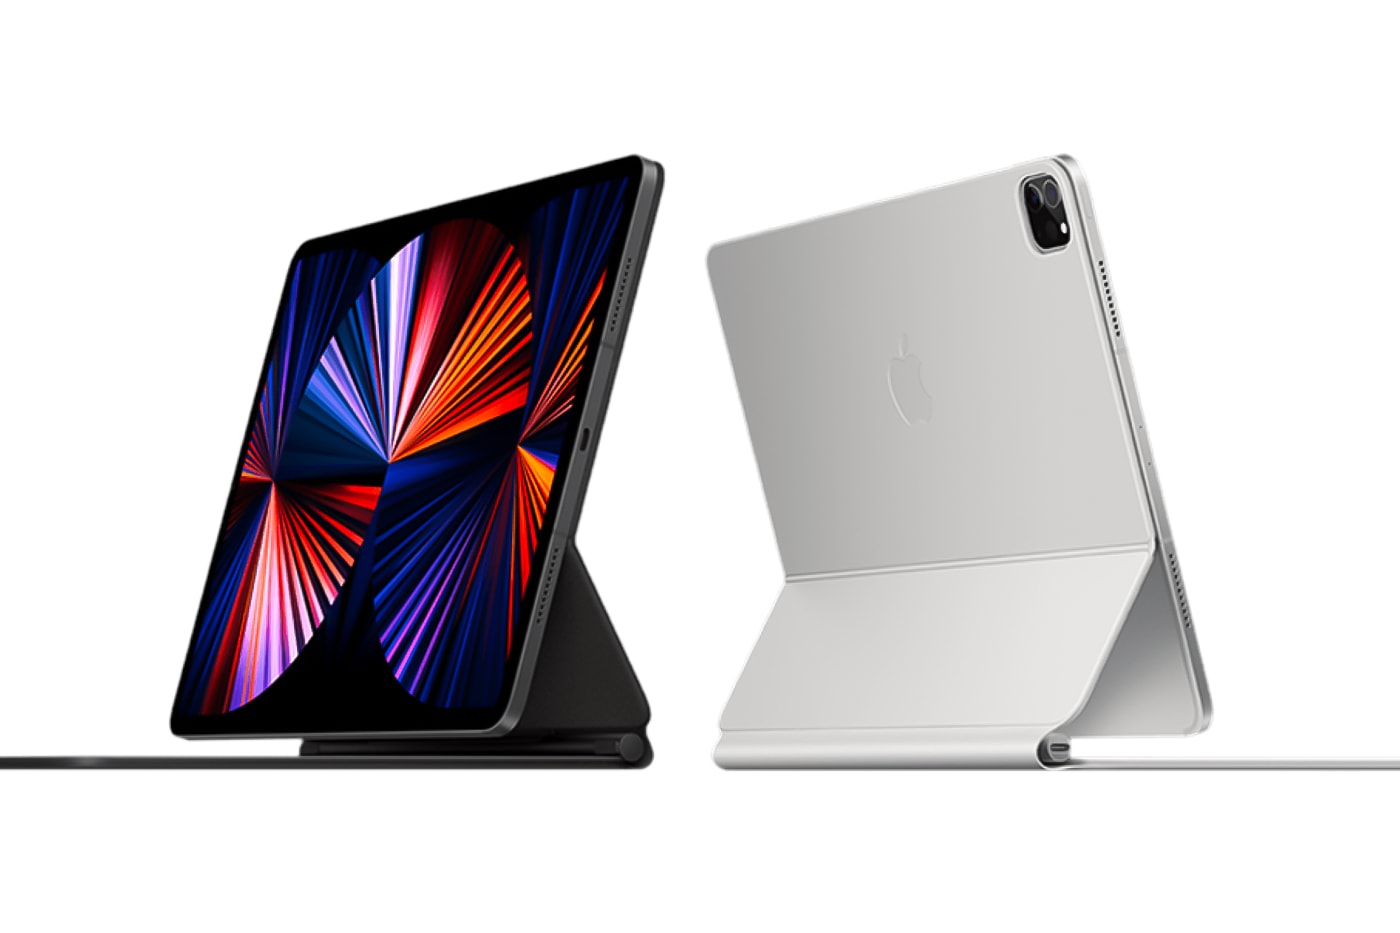 アップル の新型 アイパッド プロ はマックブックプロ16インチよりも高性能であることが判明 Apple M1 iPad Pro Faster MacBook Pro Intel Core i9 Chip fast screen graphics performance Geekbench 5 info